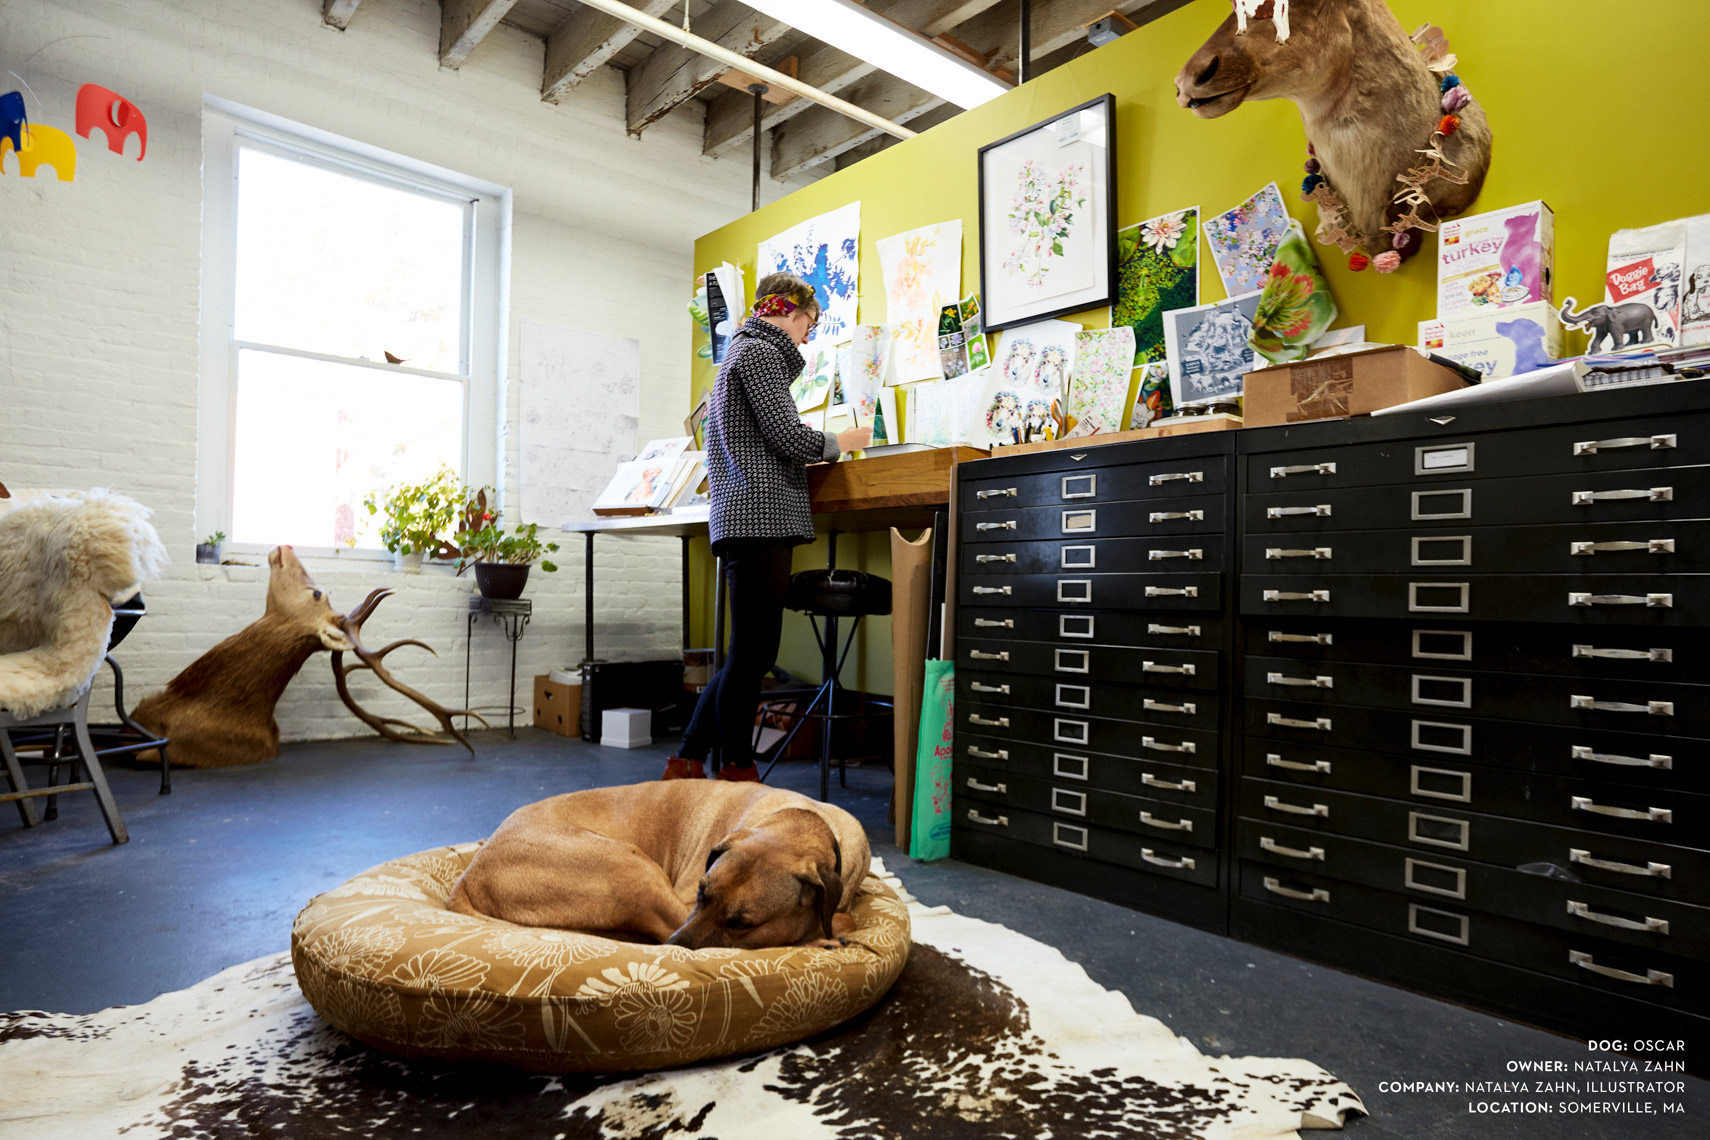 Dogs at work: Oscar snoozing at Natalya Zahn